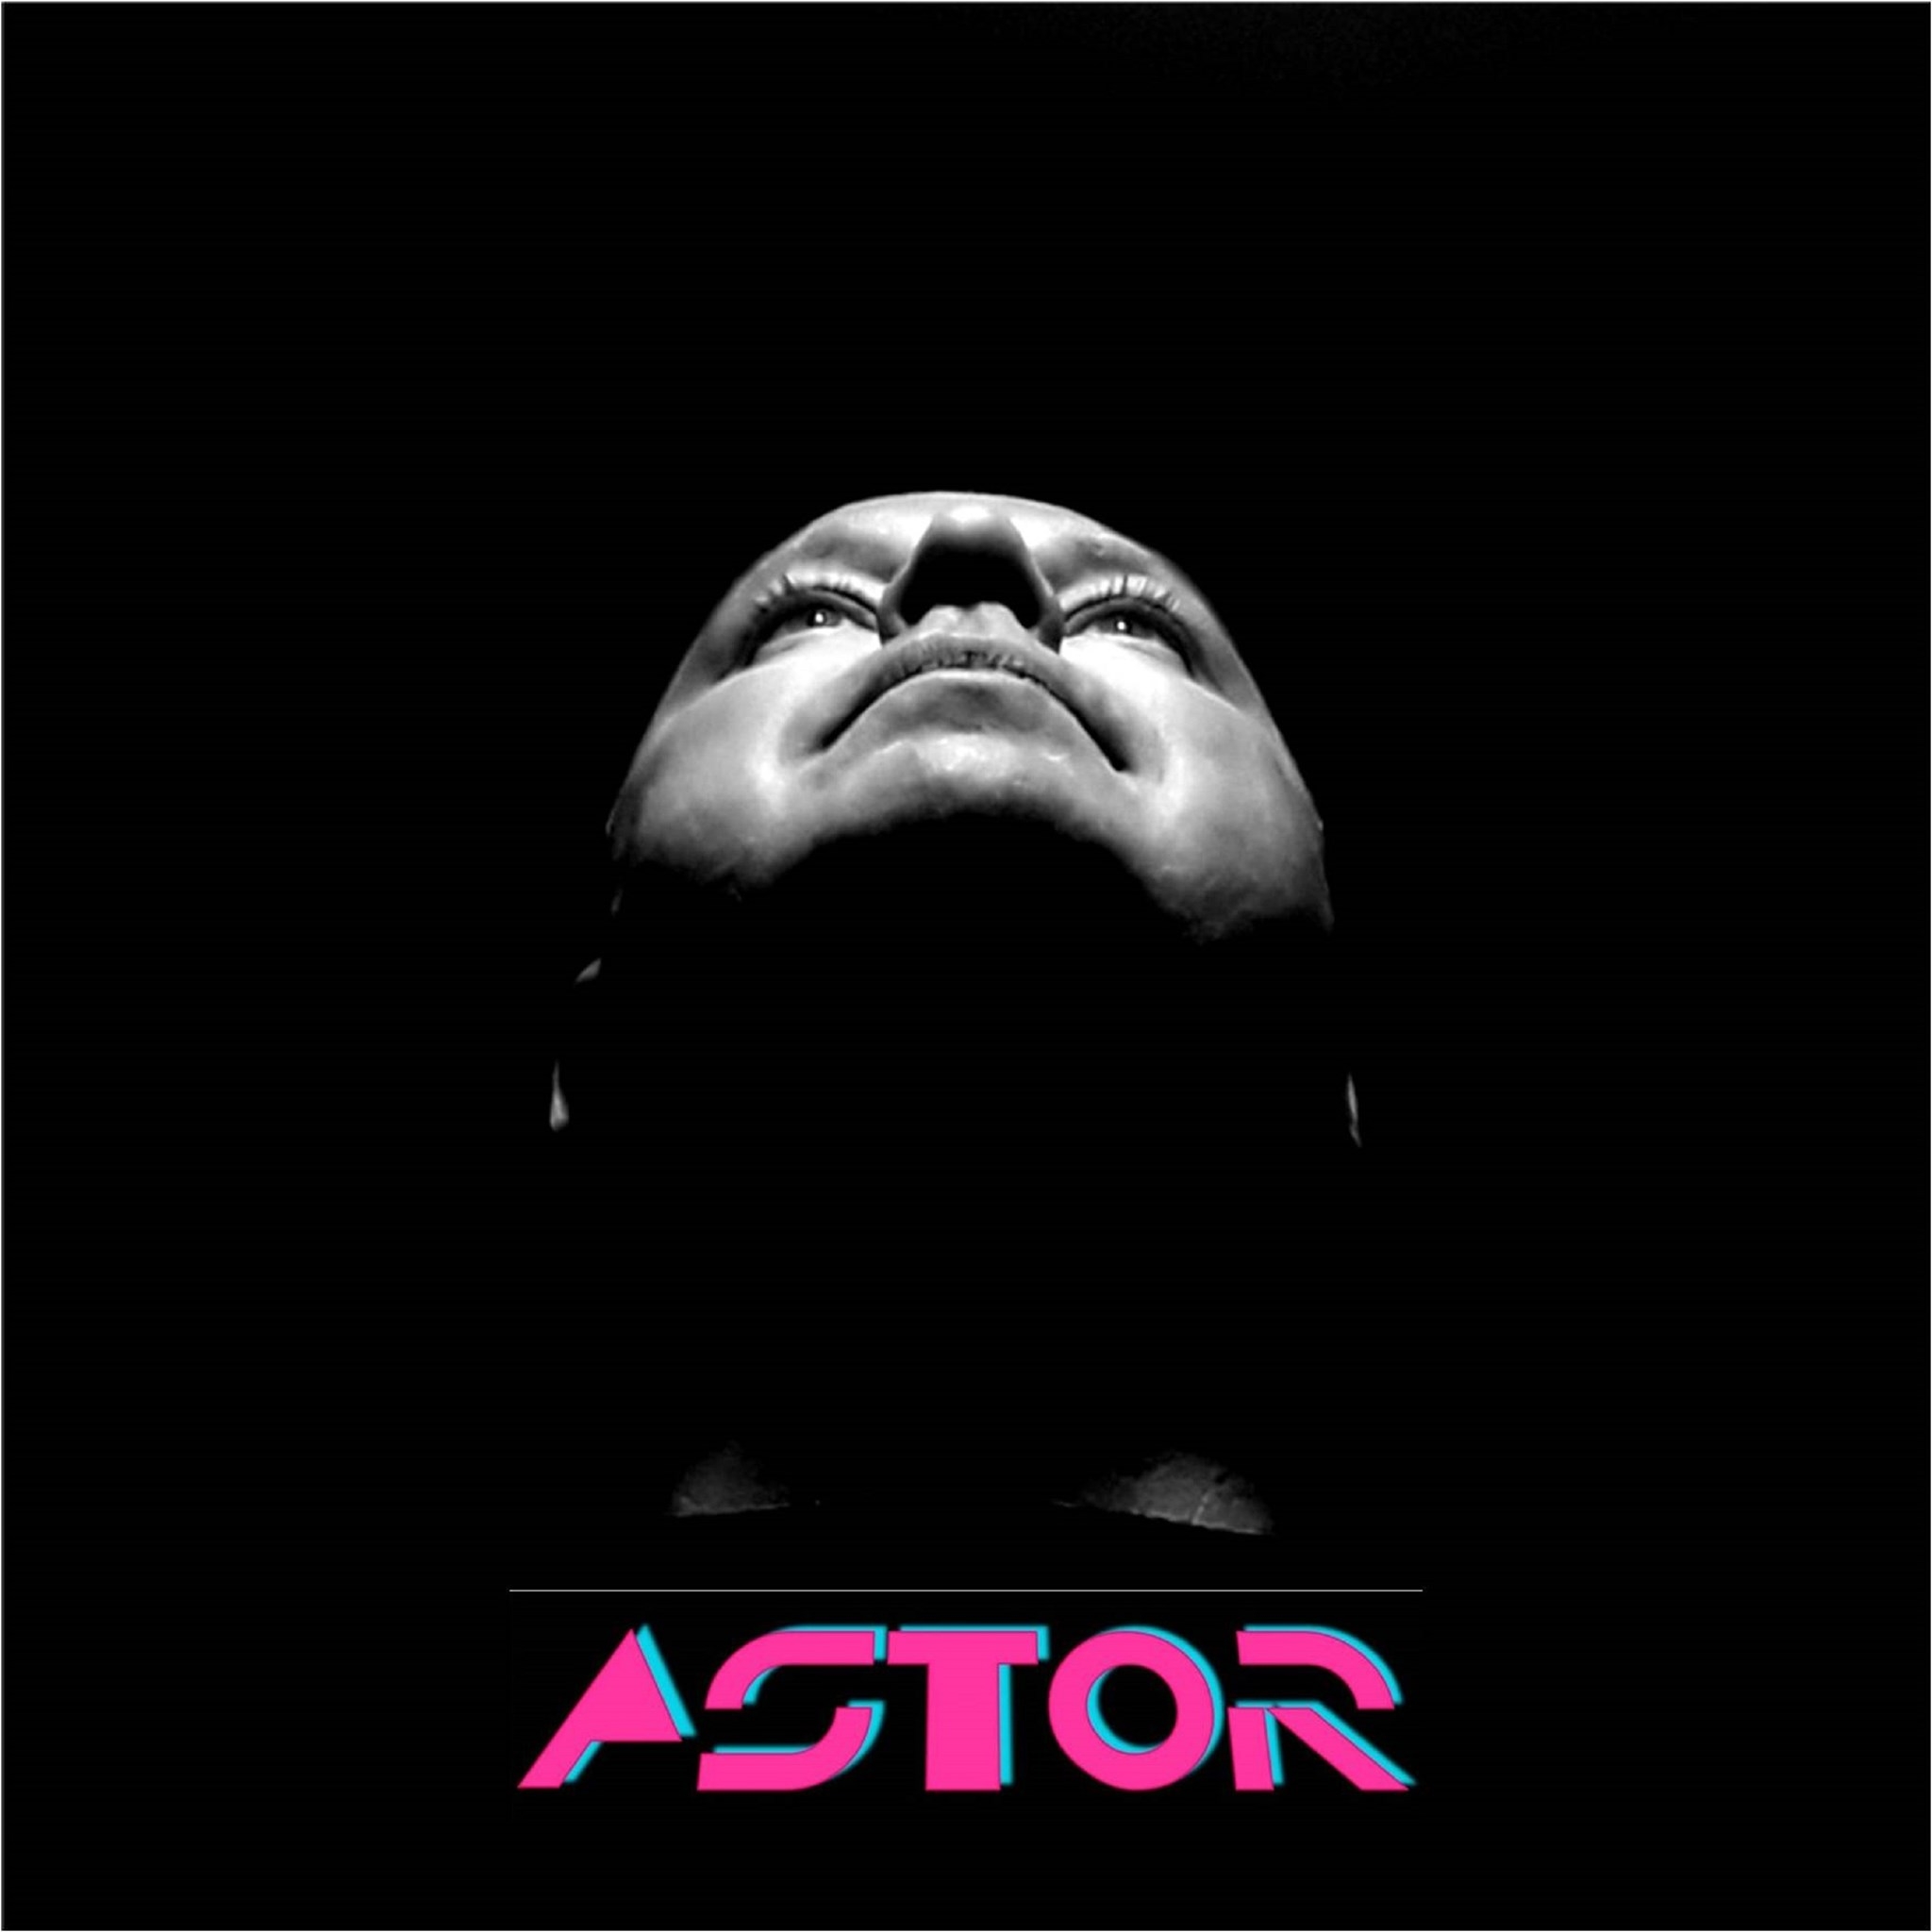 Astor: Wlad Zechner (U Just) estreia projeto synthwave